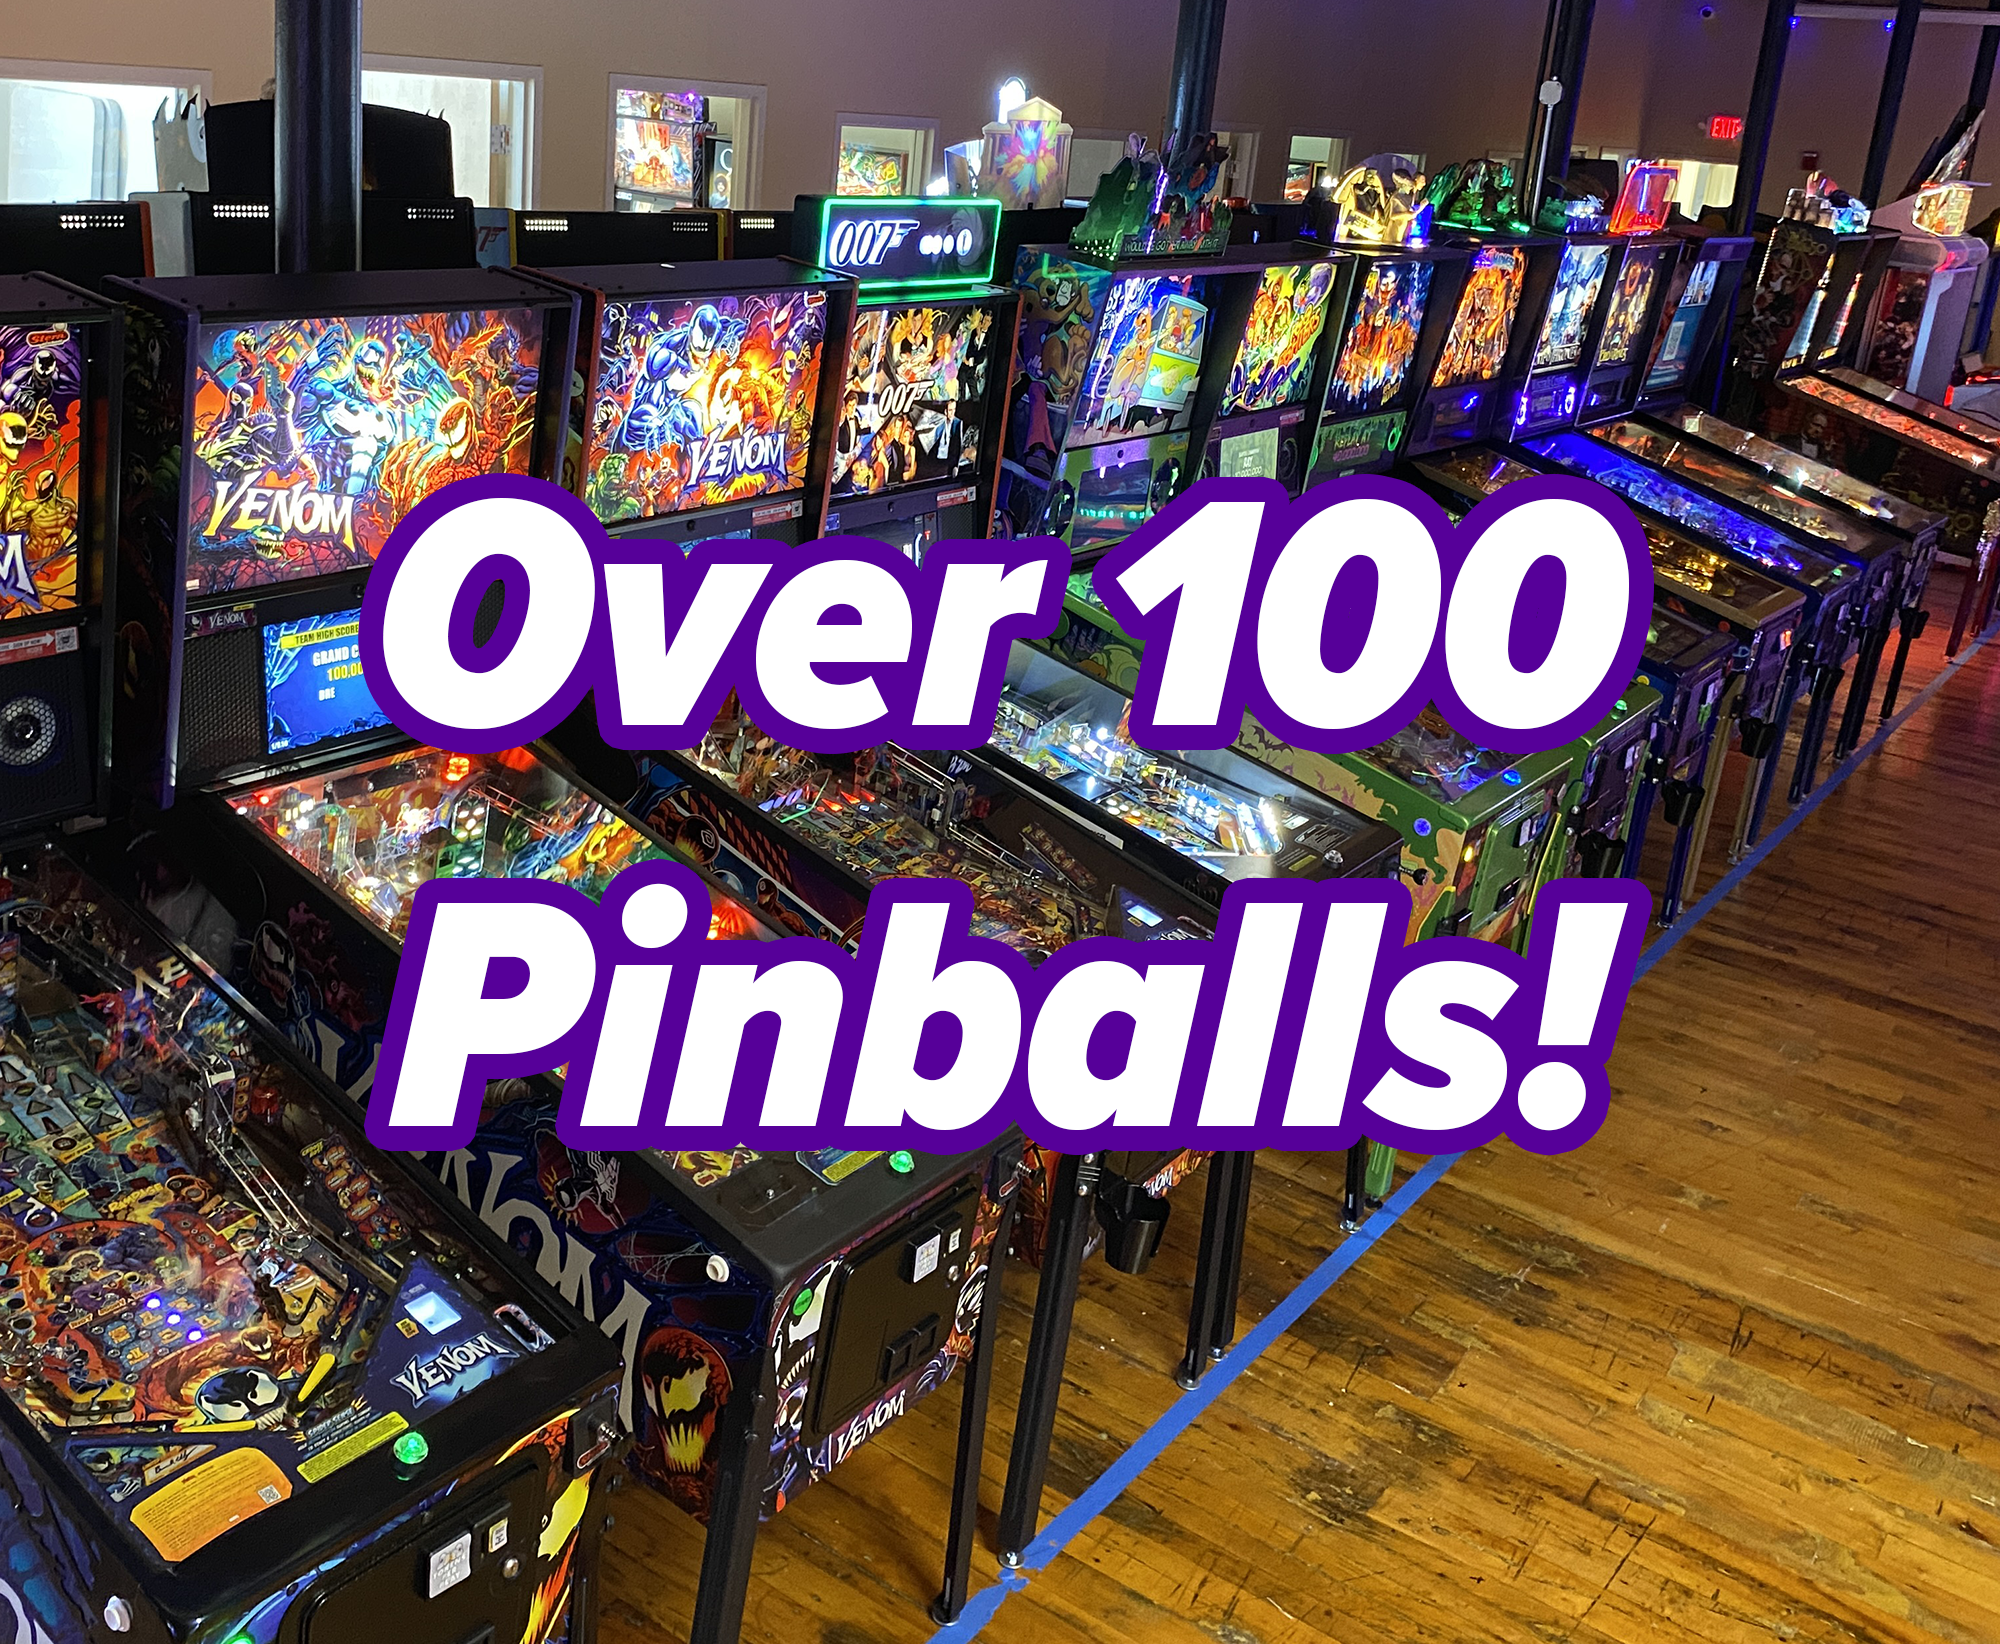 Over 100 Pinballs